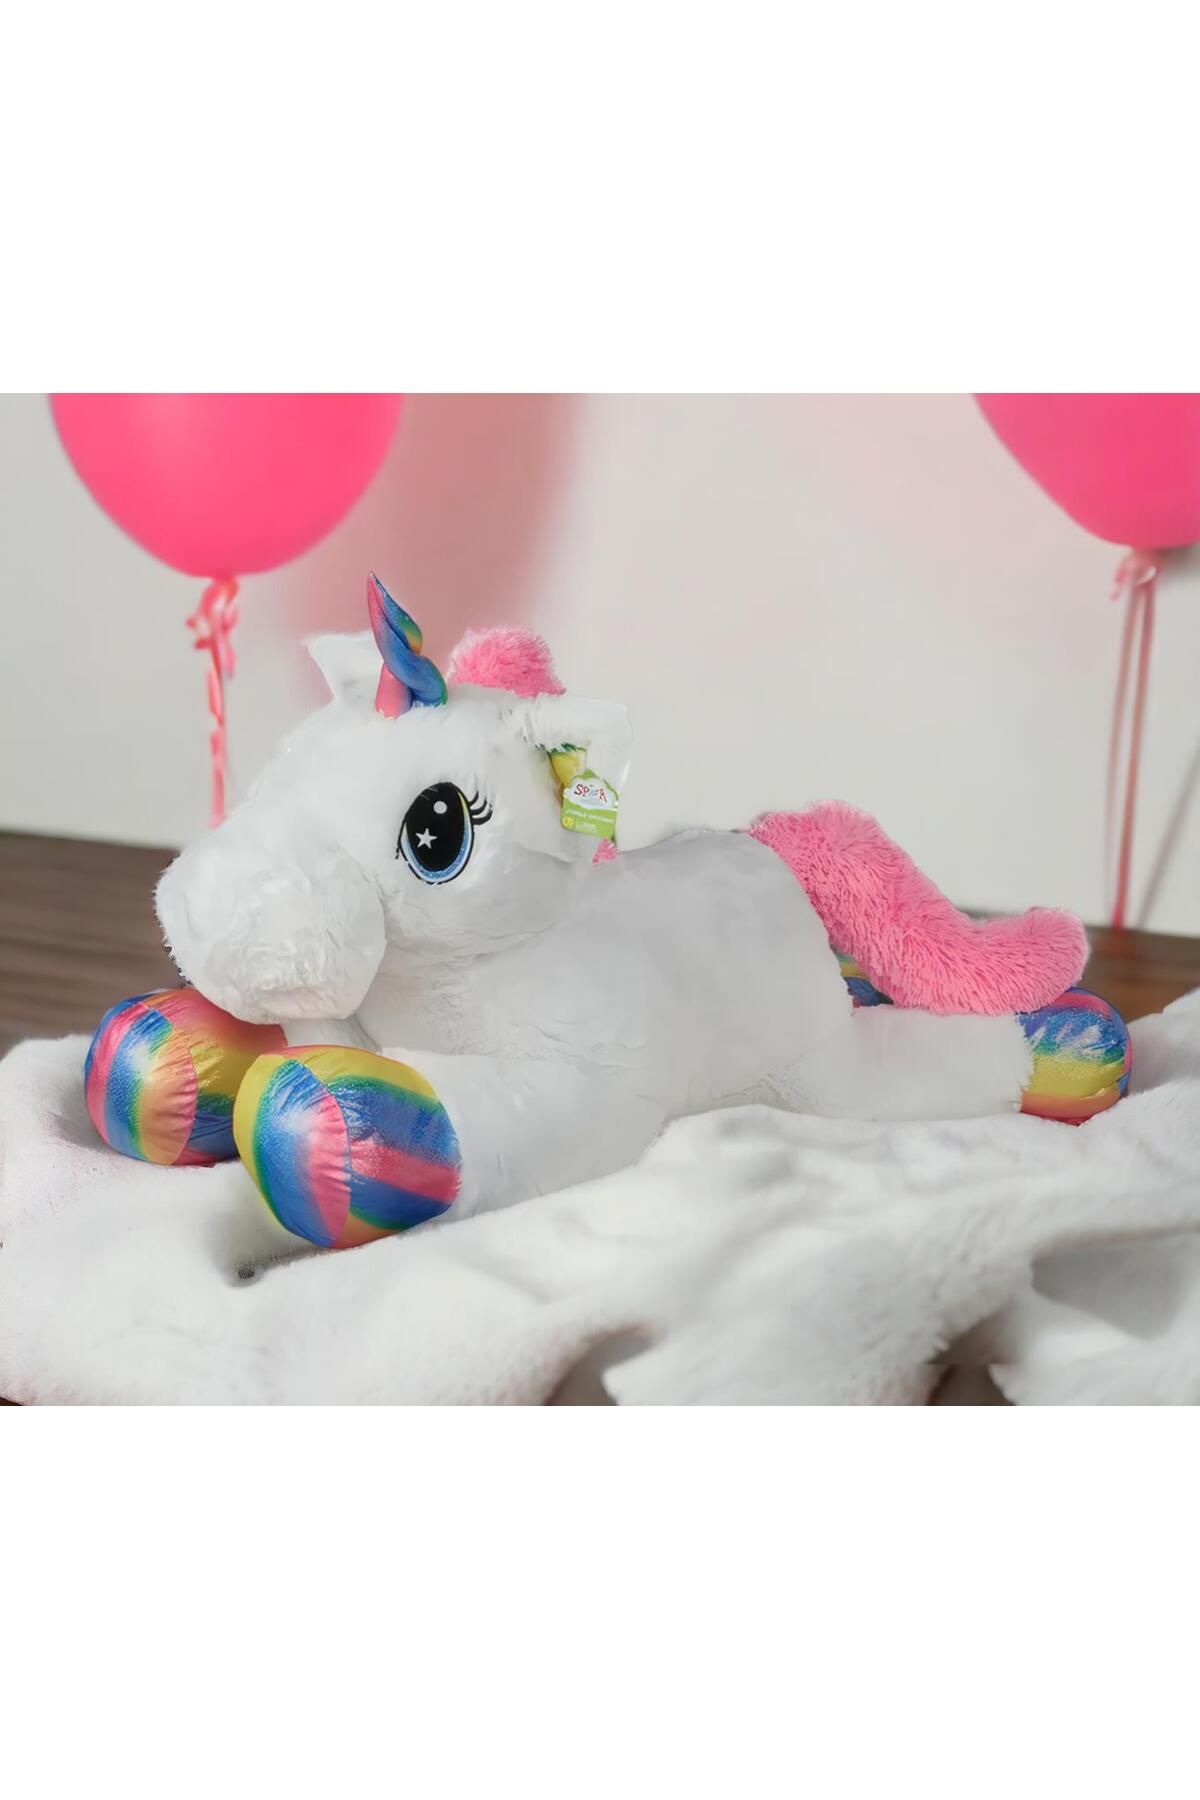 e-life shop İthal Kumaş Yaldız Desenli Tek Boynuzlu Unicorn Pony At Peluş Oyuncak Uyku & Oyun Arkadaşı Jumbo Boy